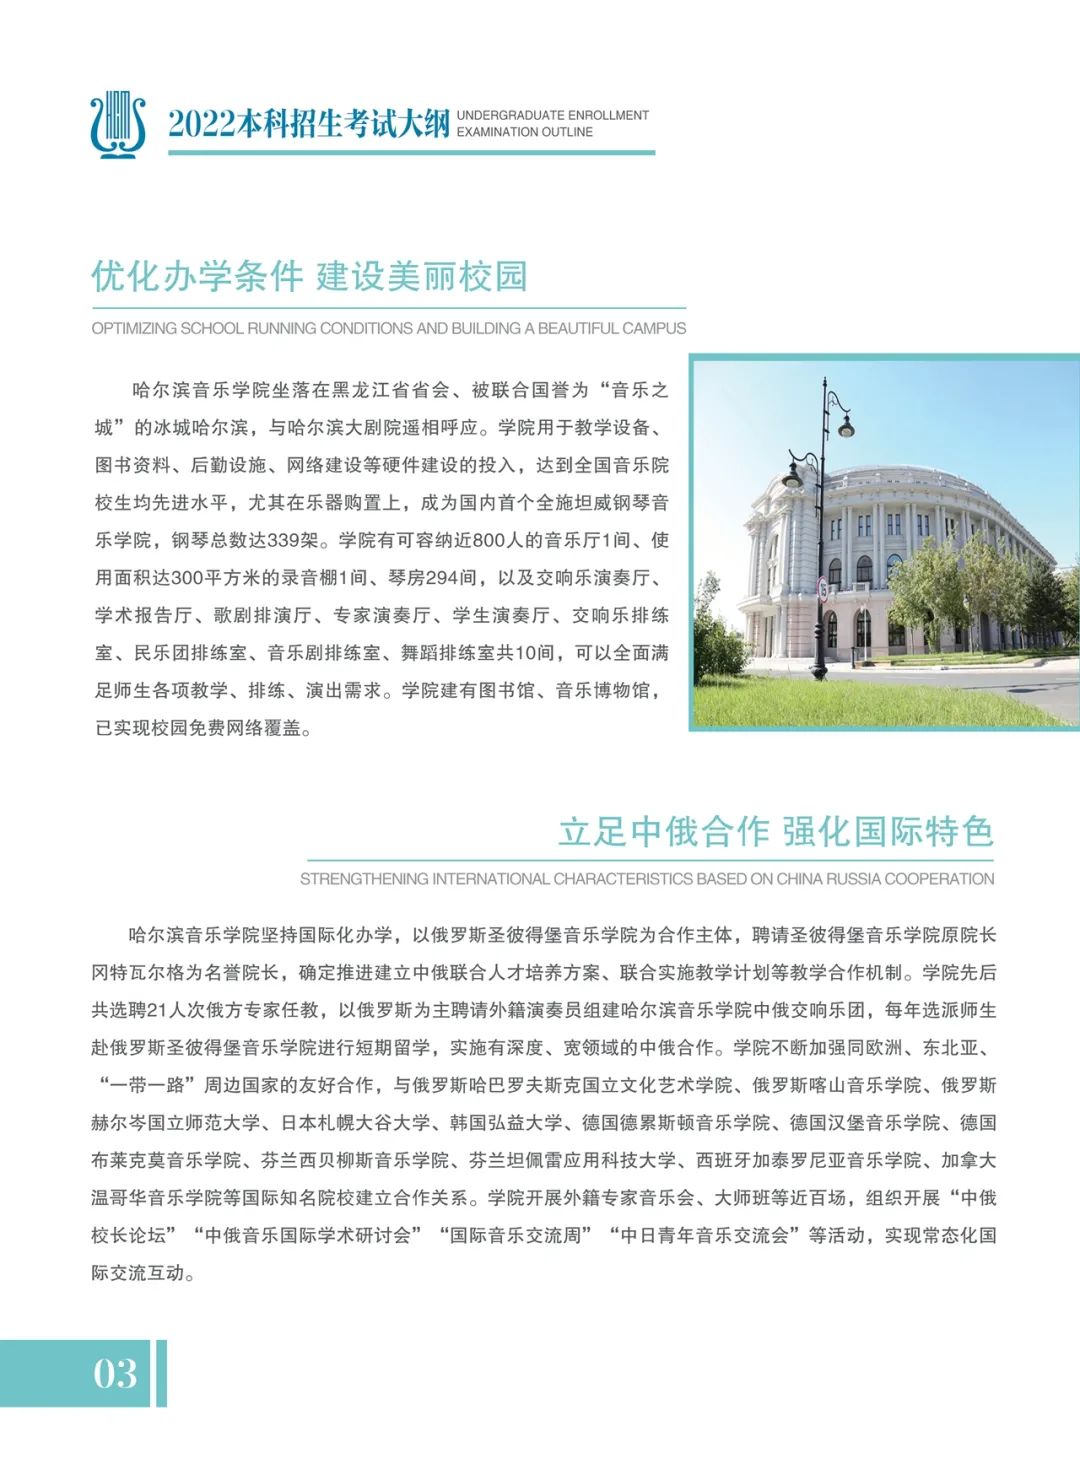 2022年哈尔滨音乐学院本科招生考试大纲